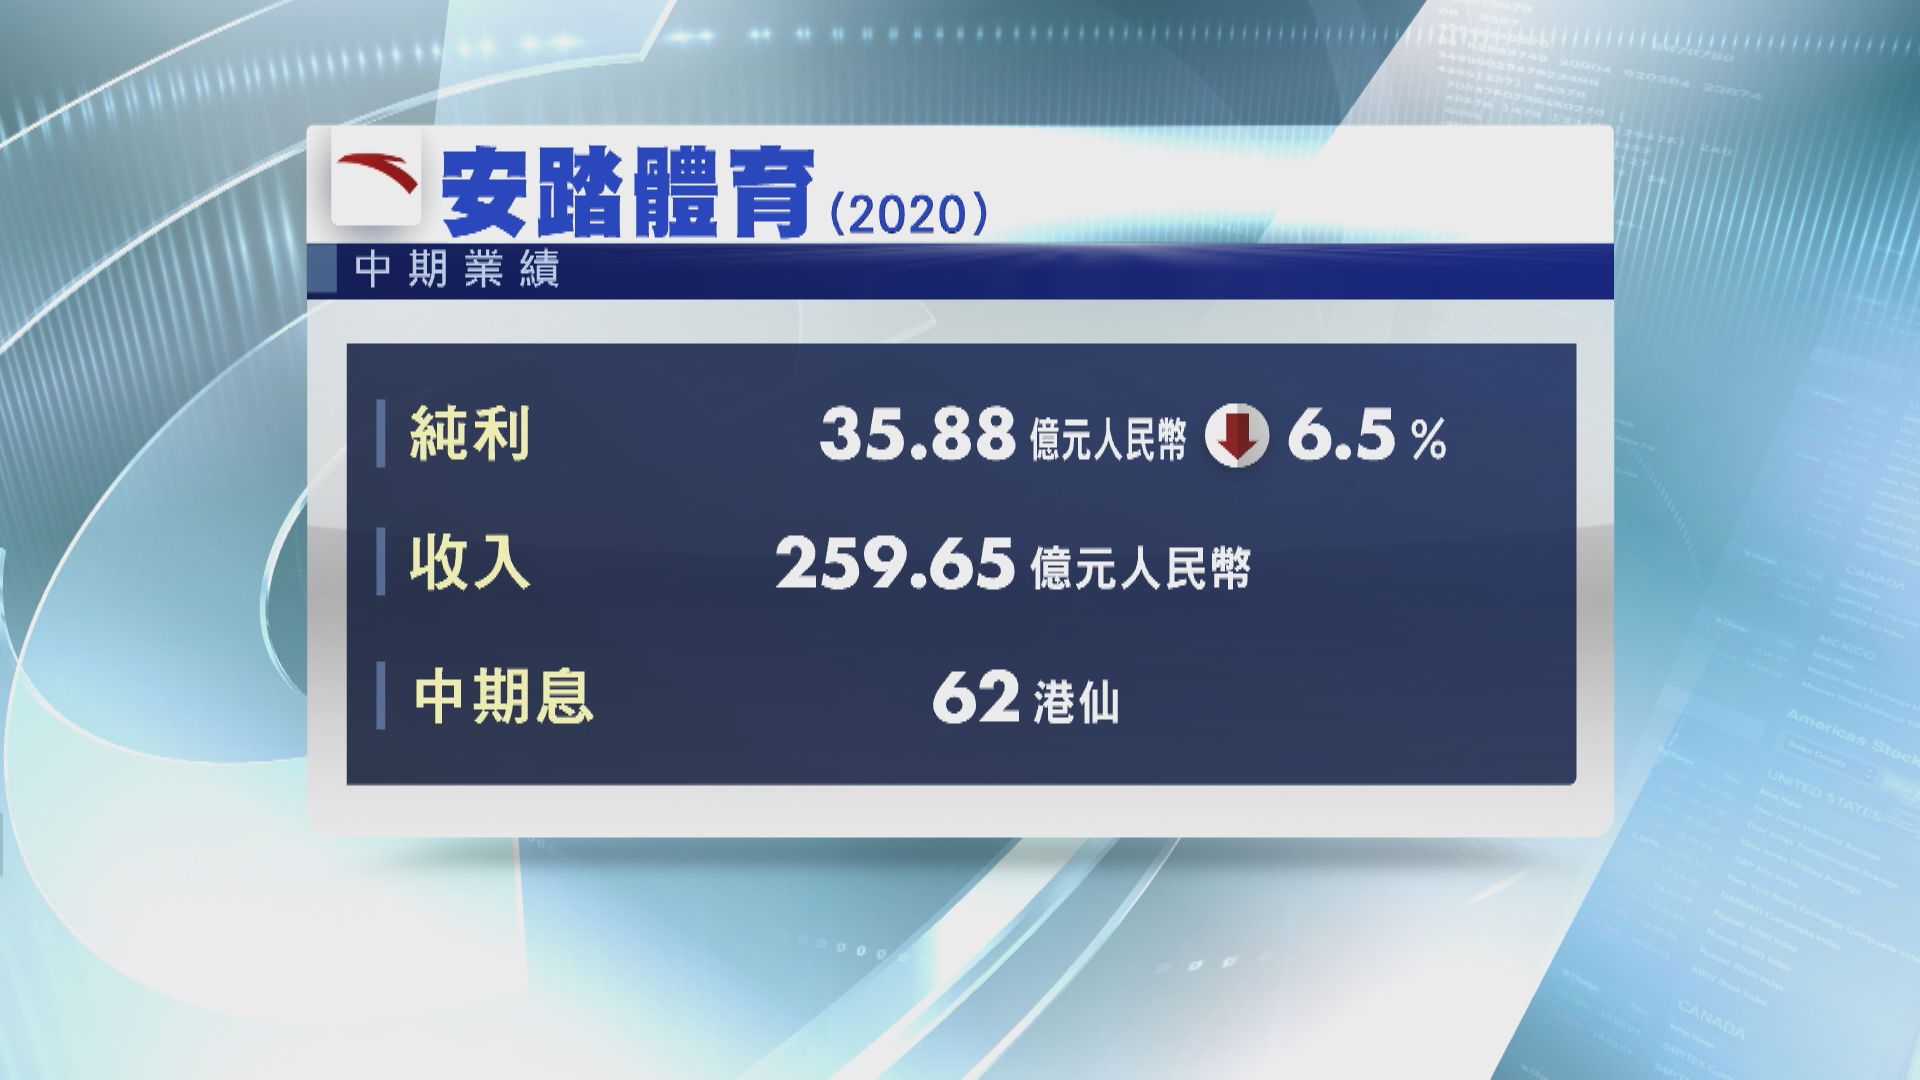 【藍籌業績】安踏少賺6.5% 中期息增至62港仙